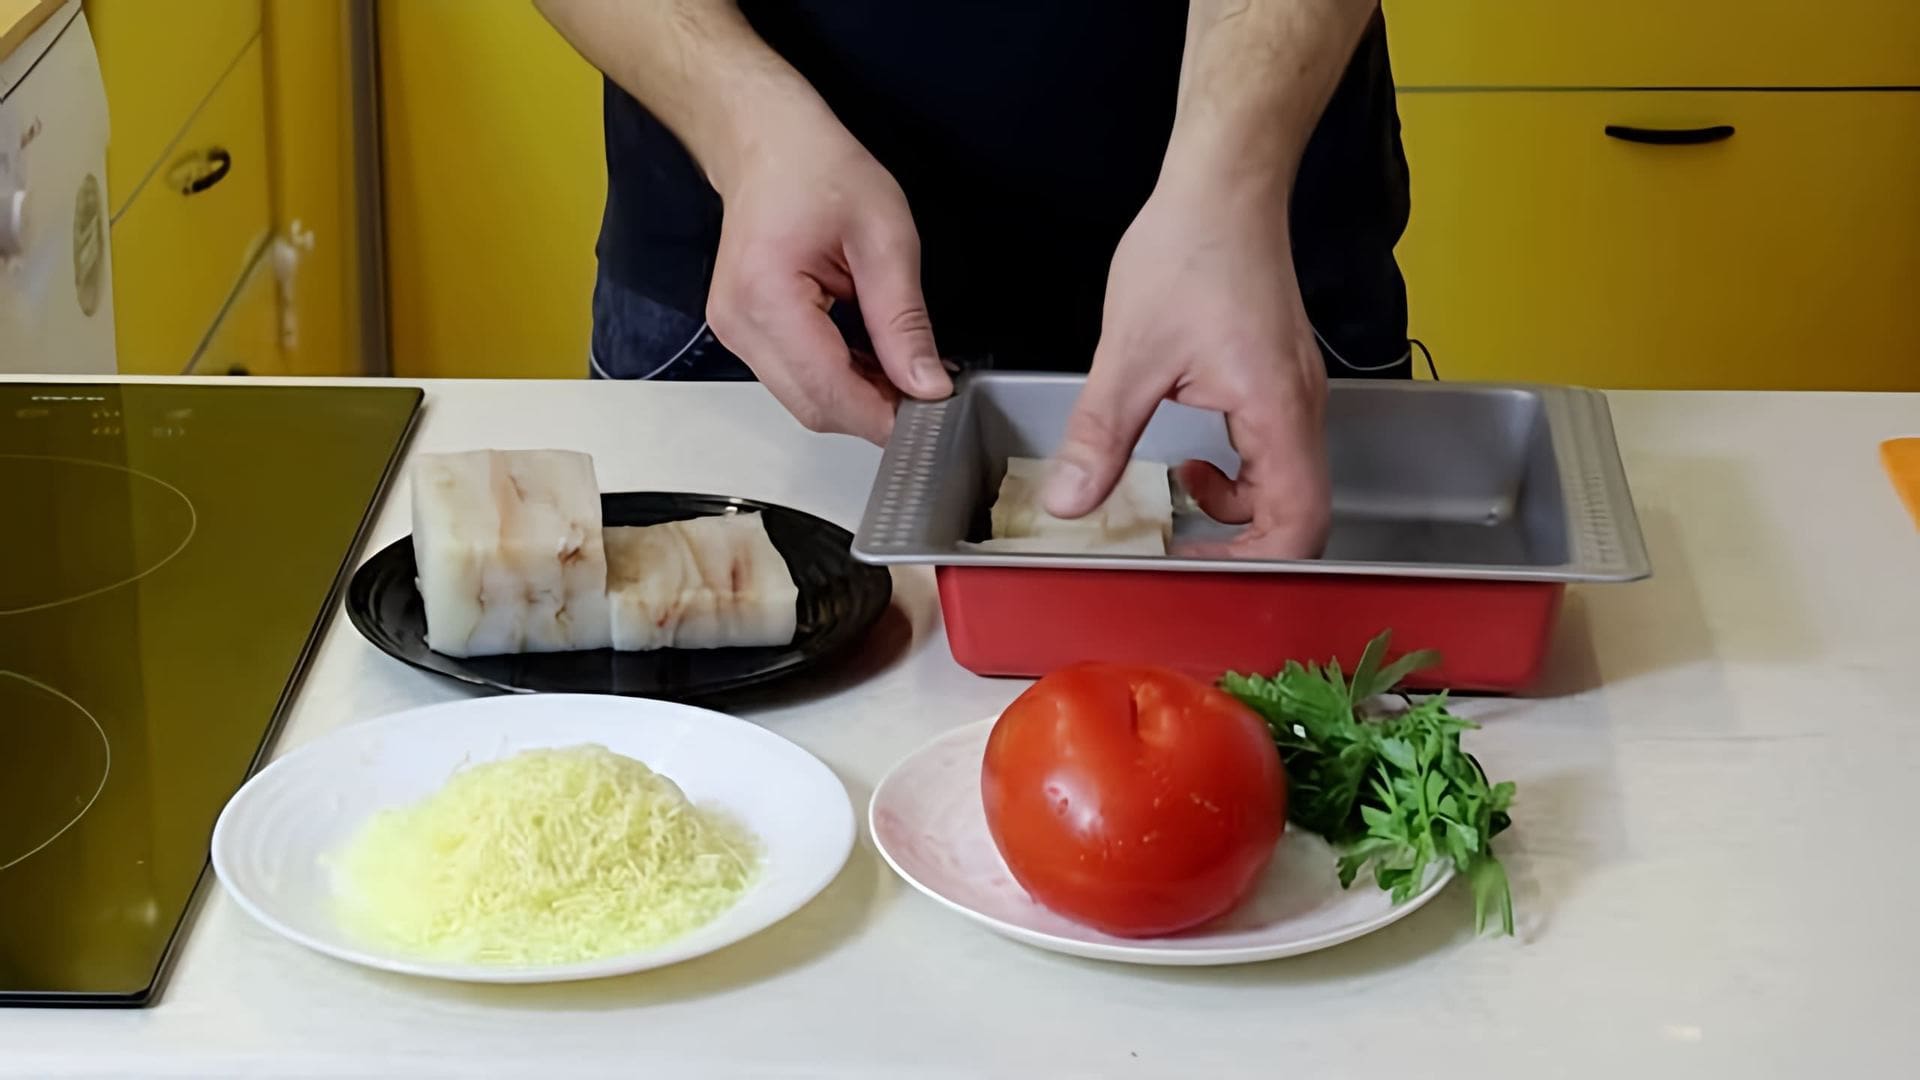 В этом видео демонстрируется процесс приготовления филе минтая в духовке с сыром и помидорами